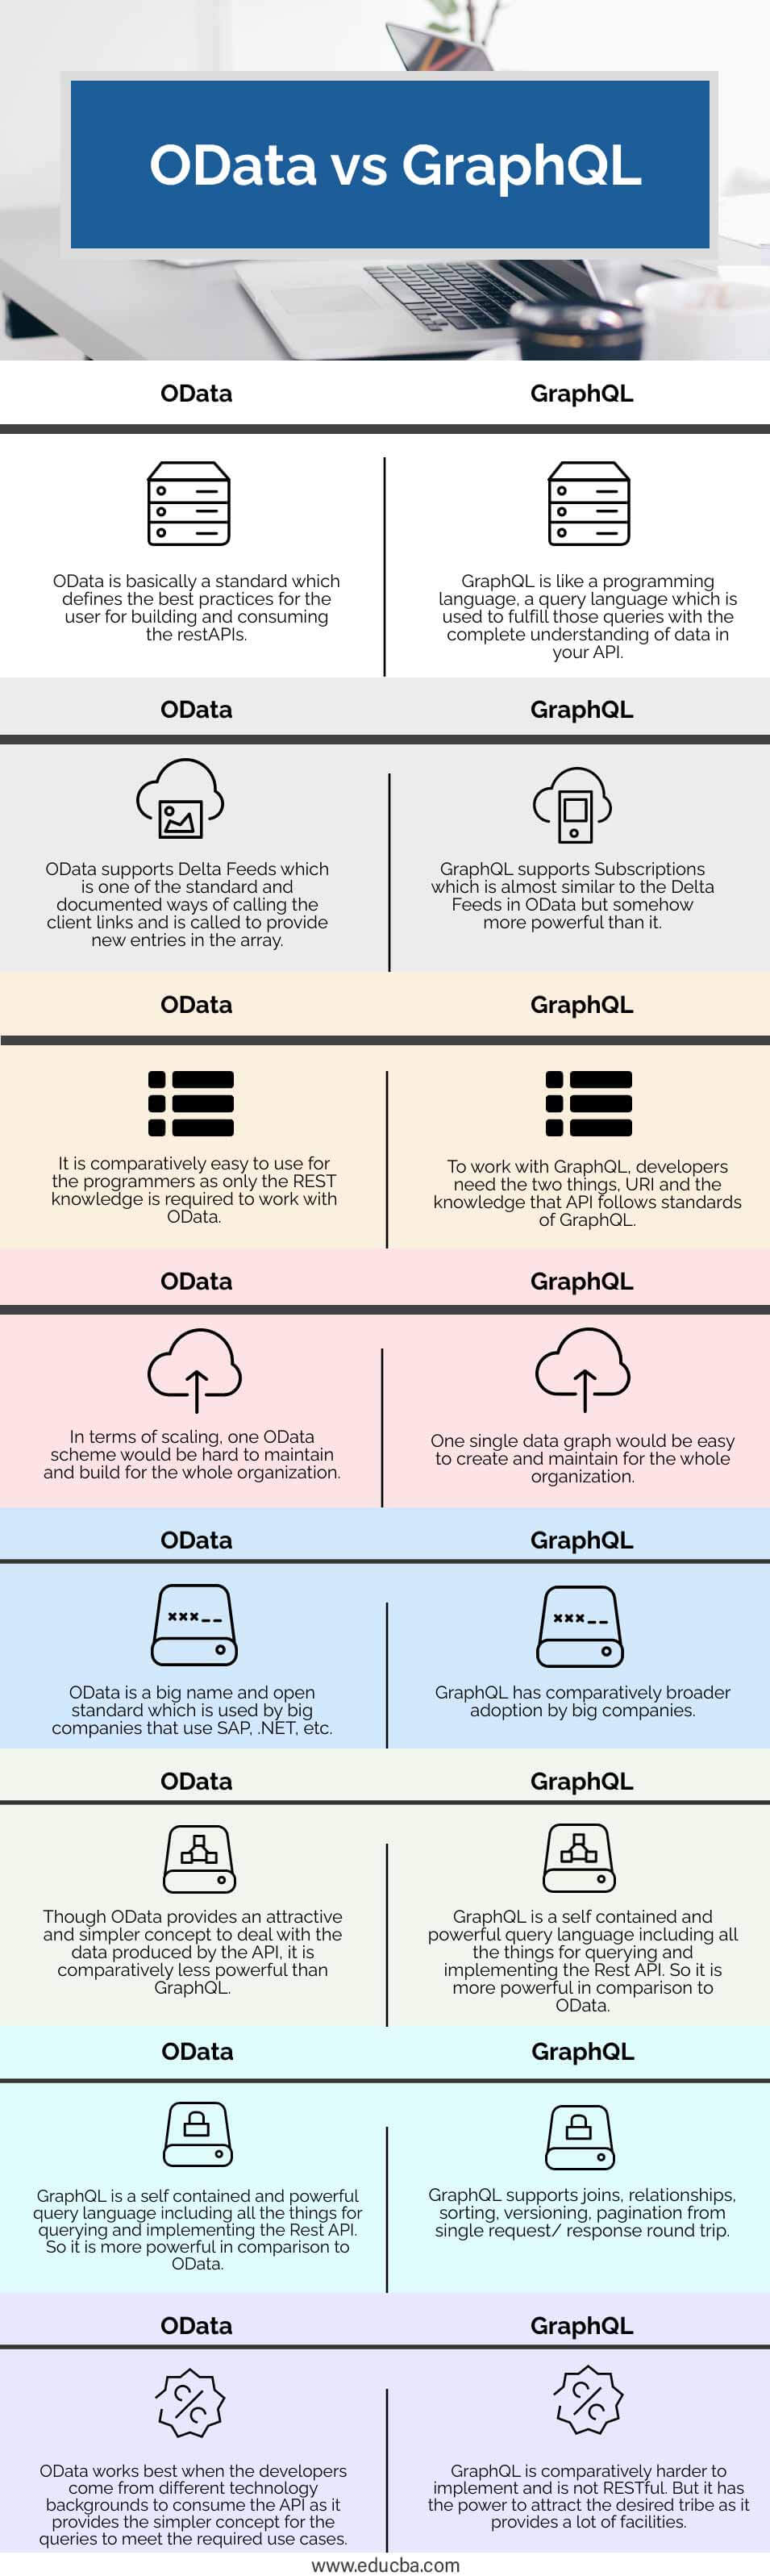 OData-vs-GraphQL-info